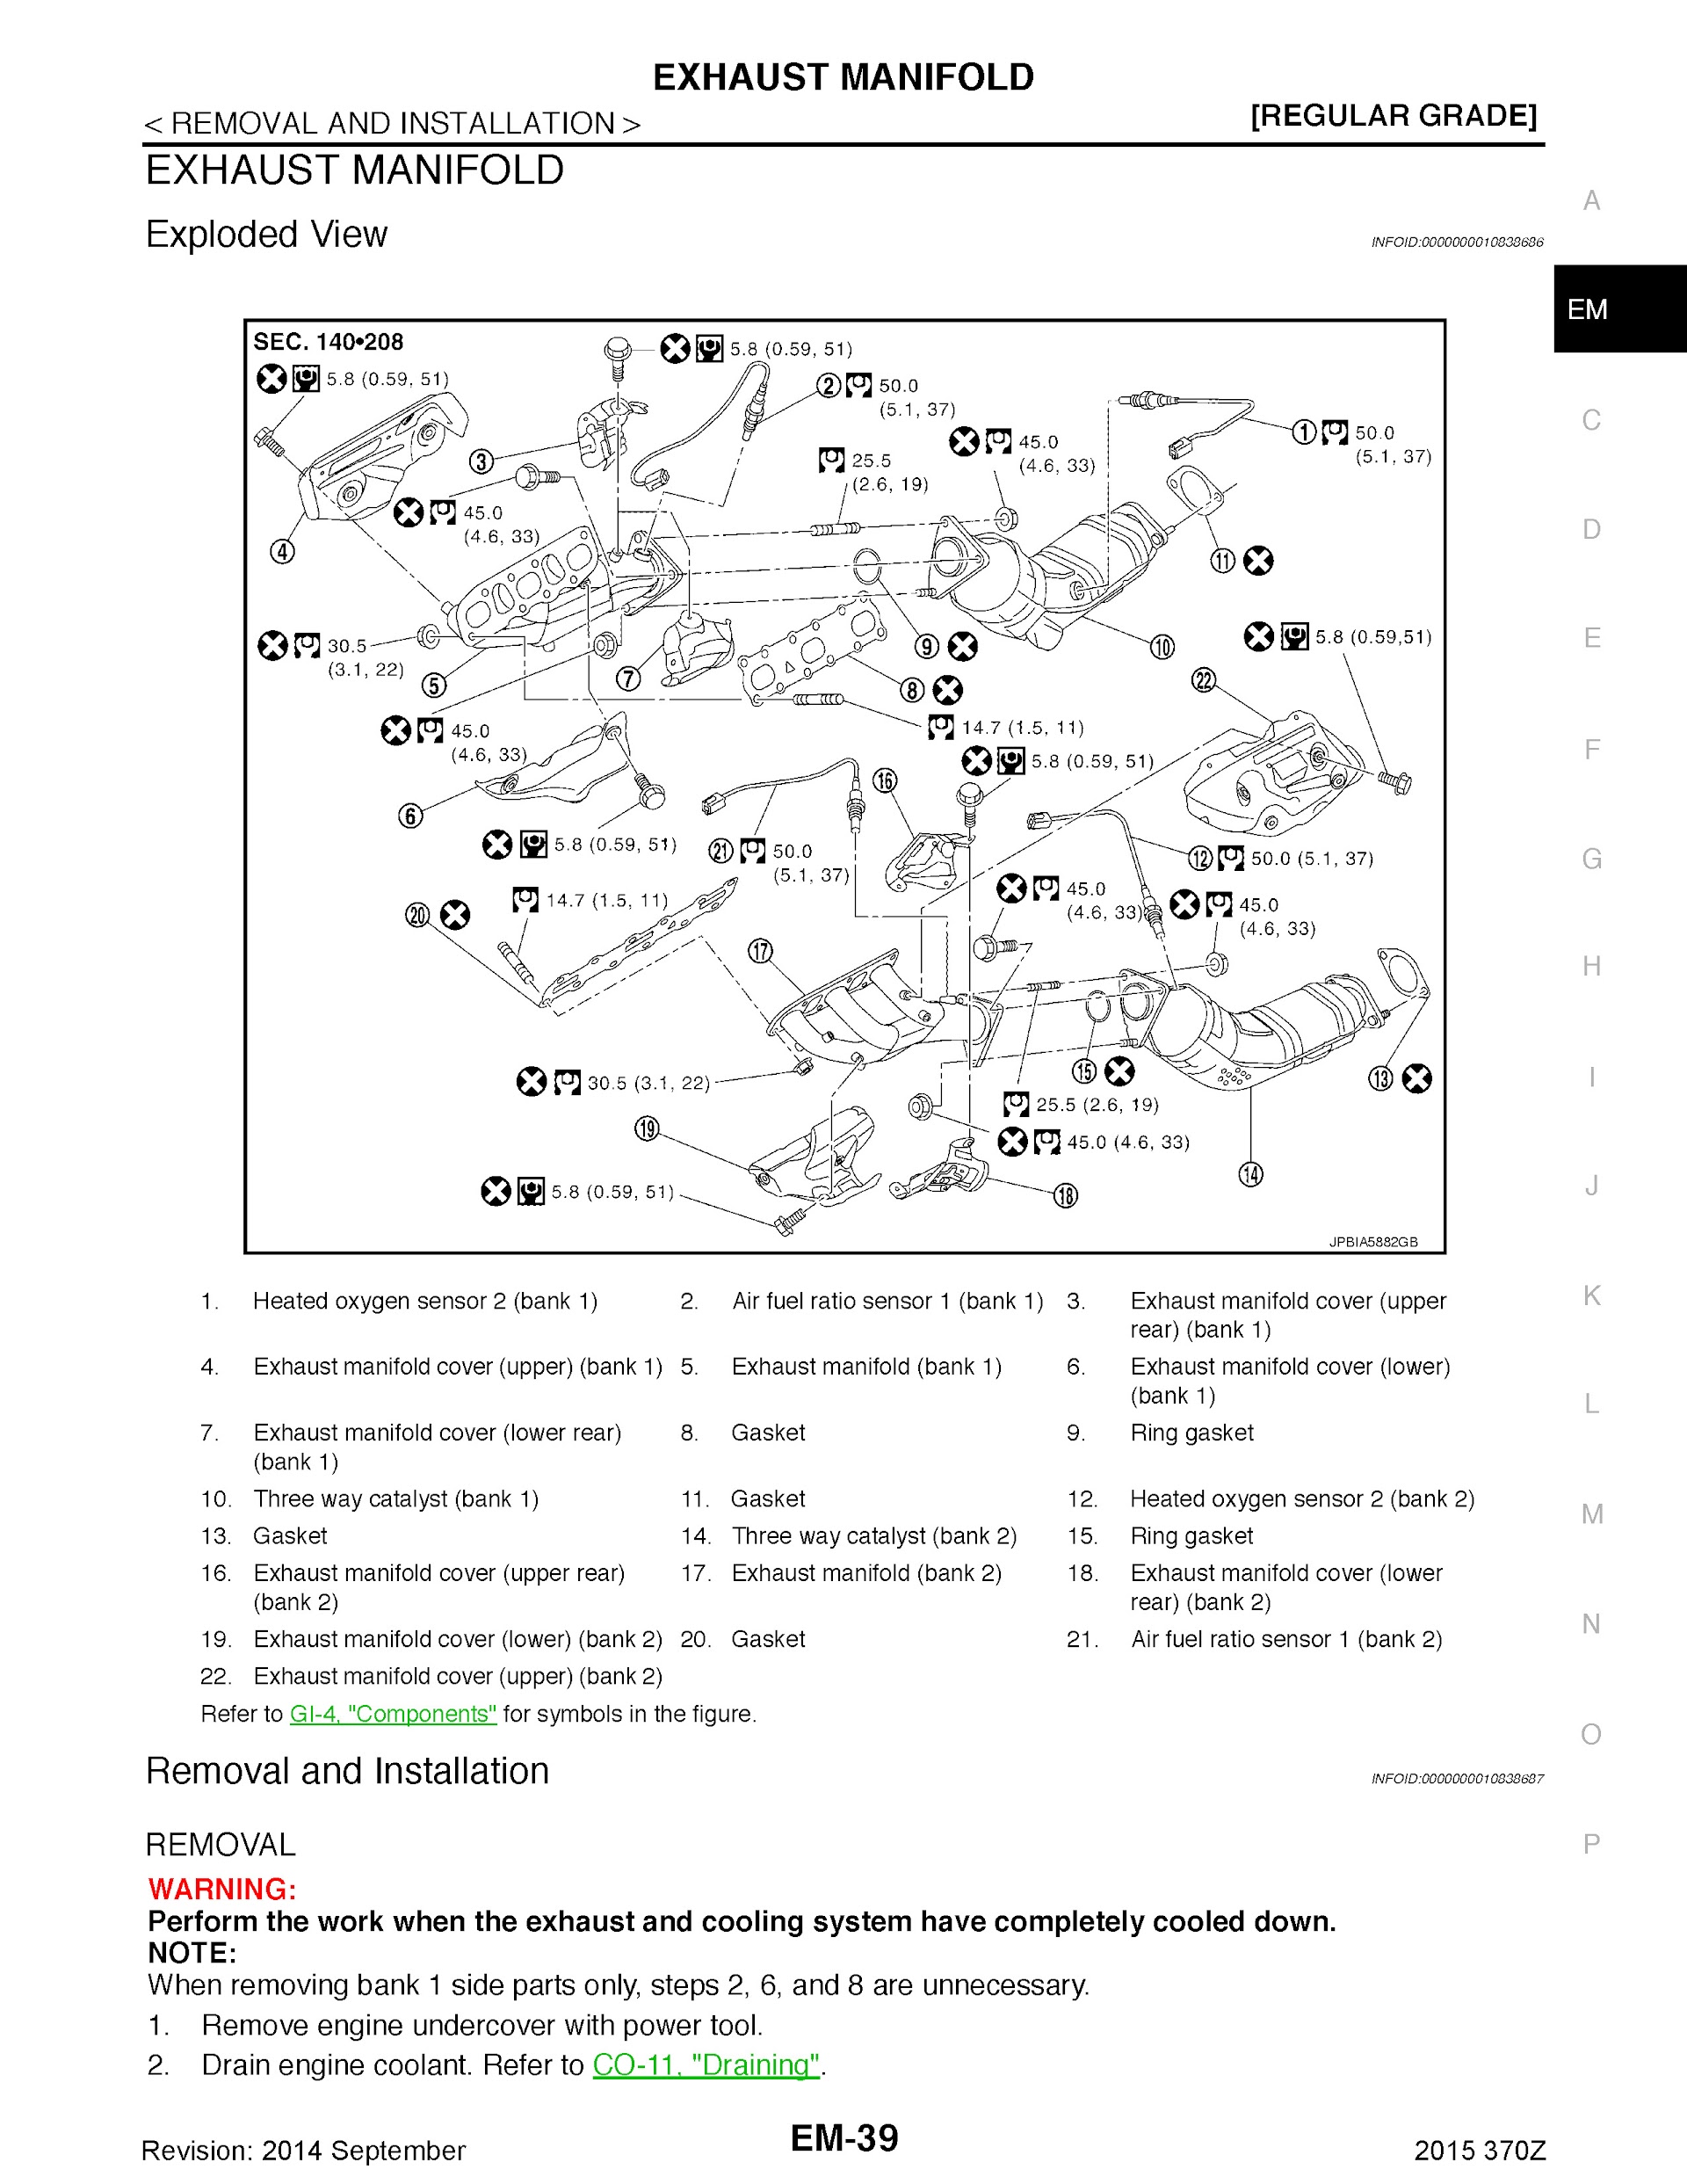 2015 Nissan 370Z Repair Manual, Exhaist Manifold